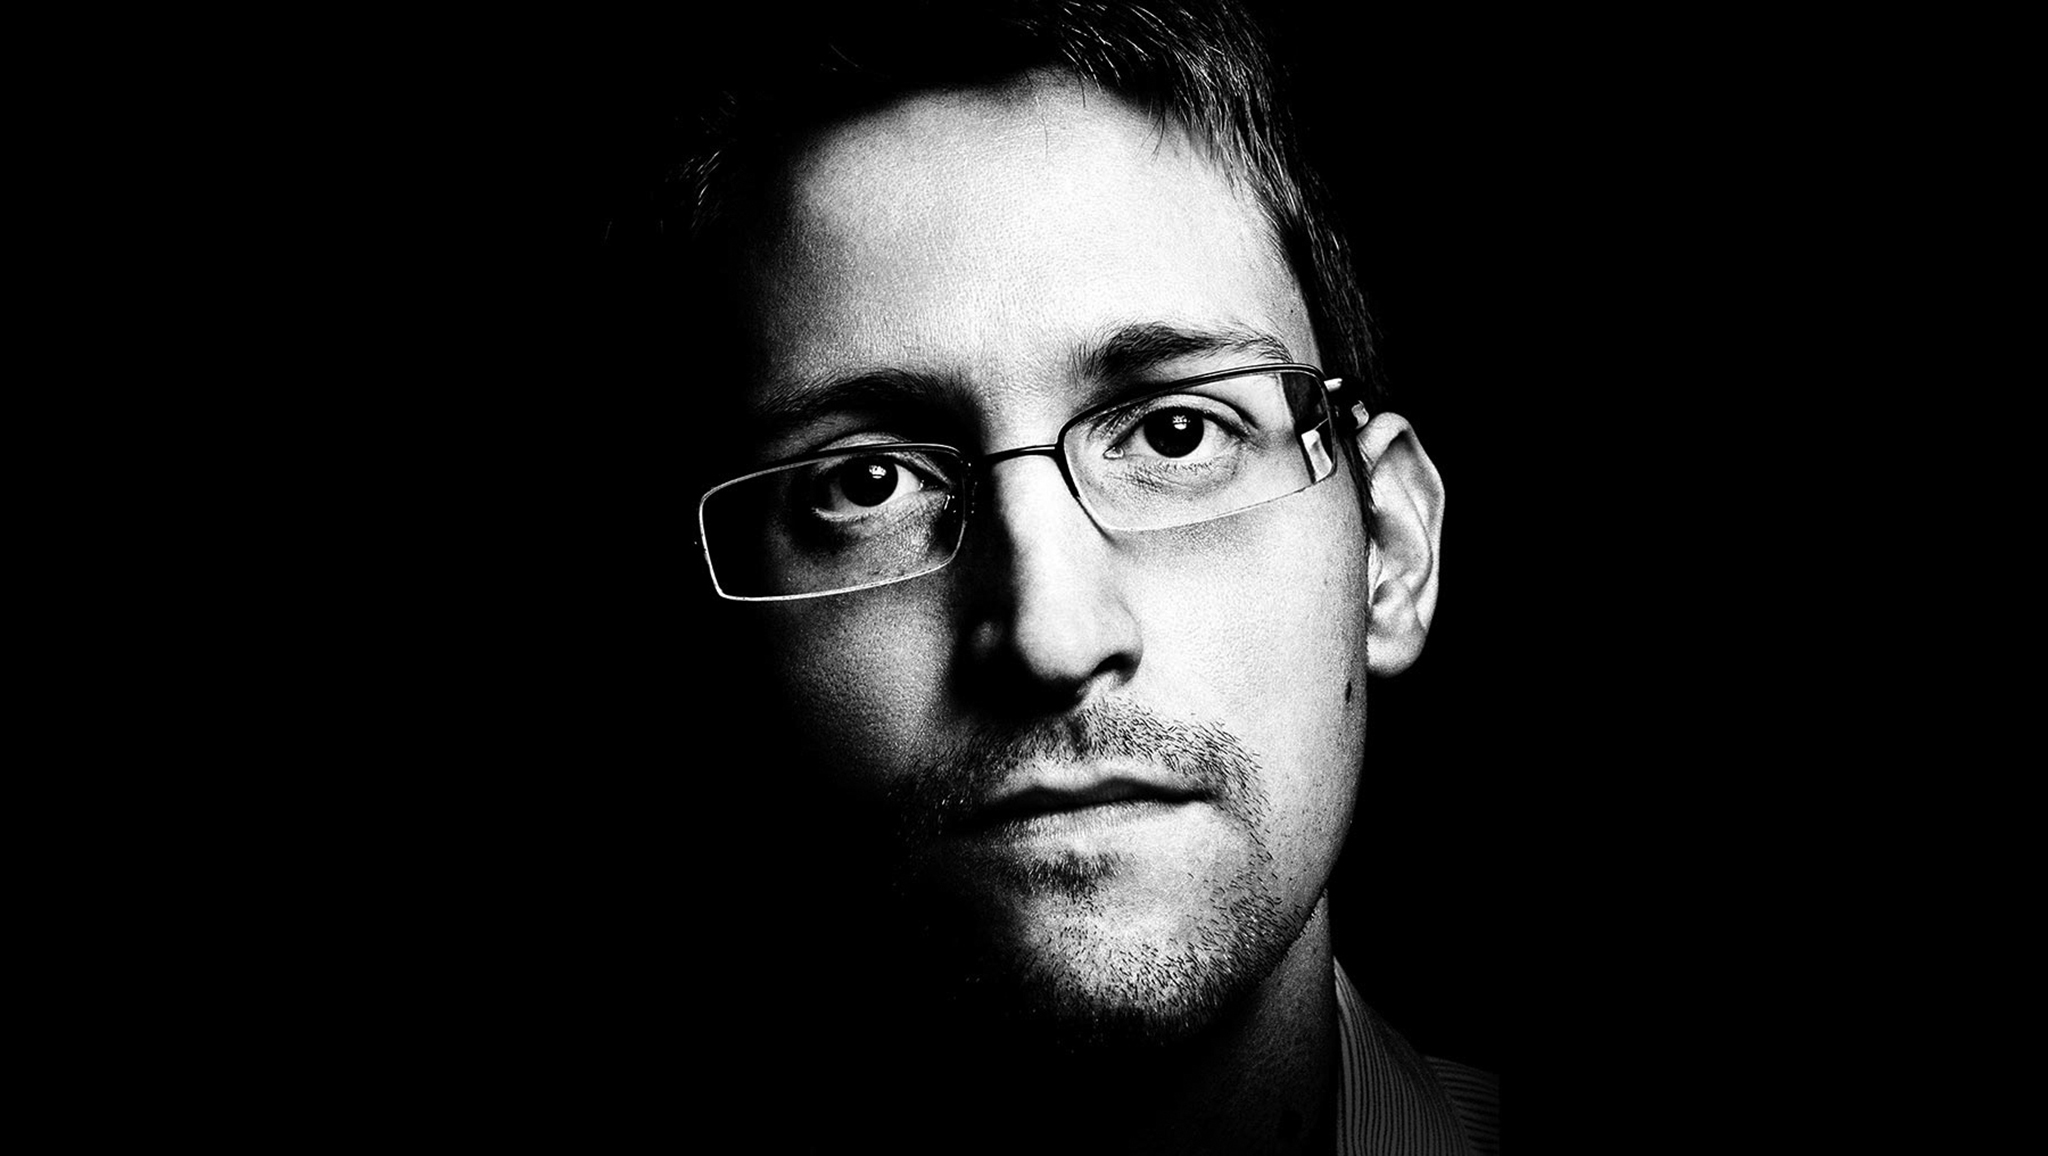 Hong Kong | Asilo rejeitado a requerentes que ajudaram Snowden